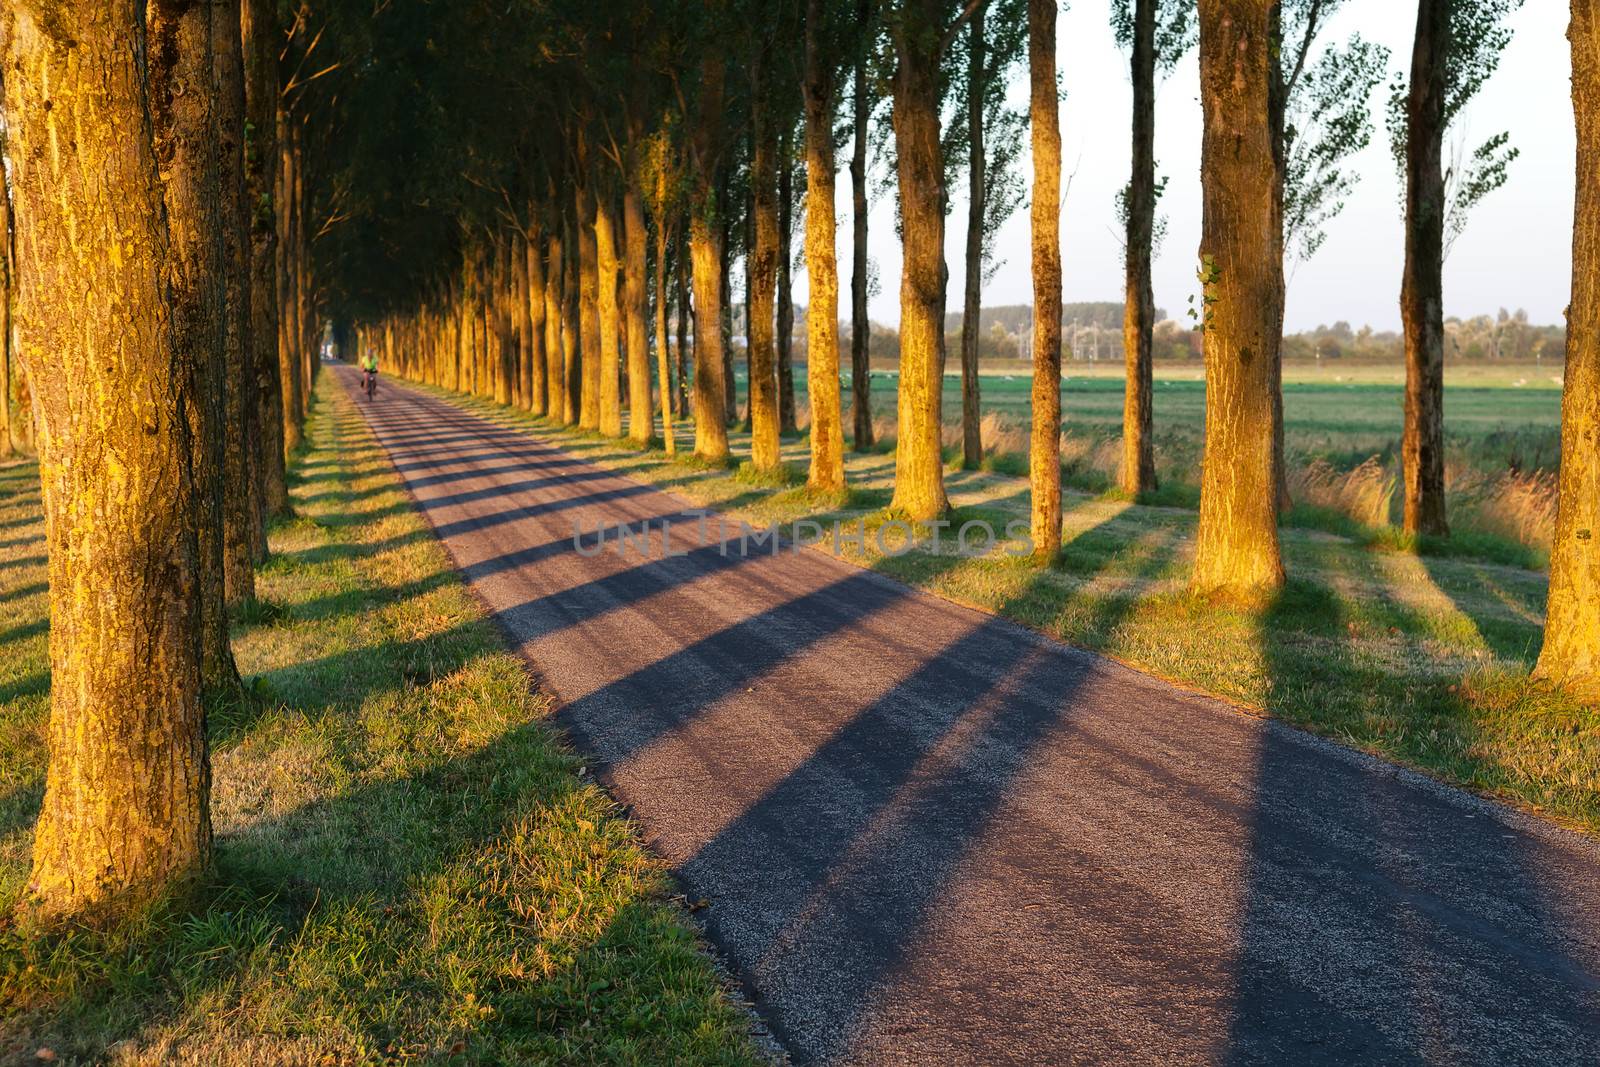 tree shadow pattern on bike road in morning sunlight, Netherlands